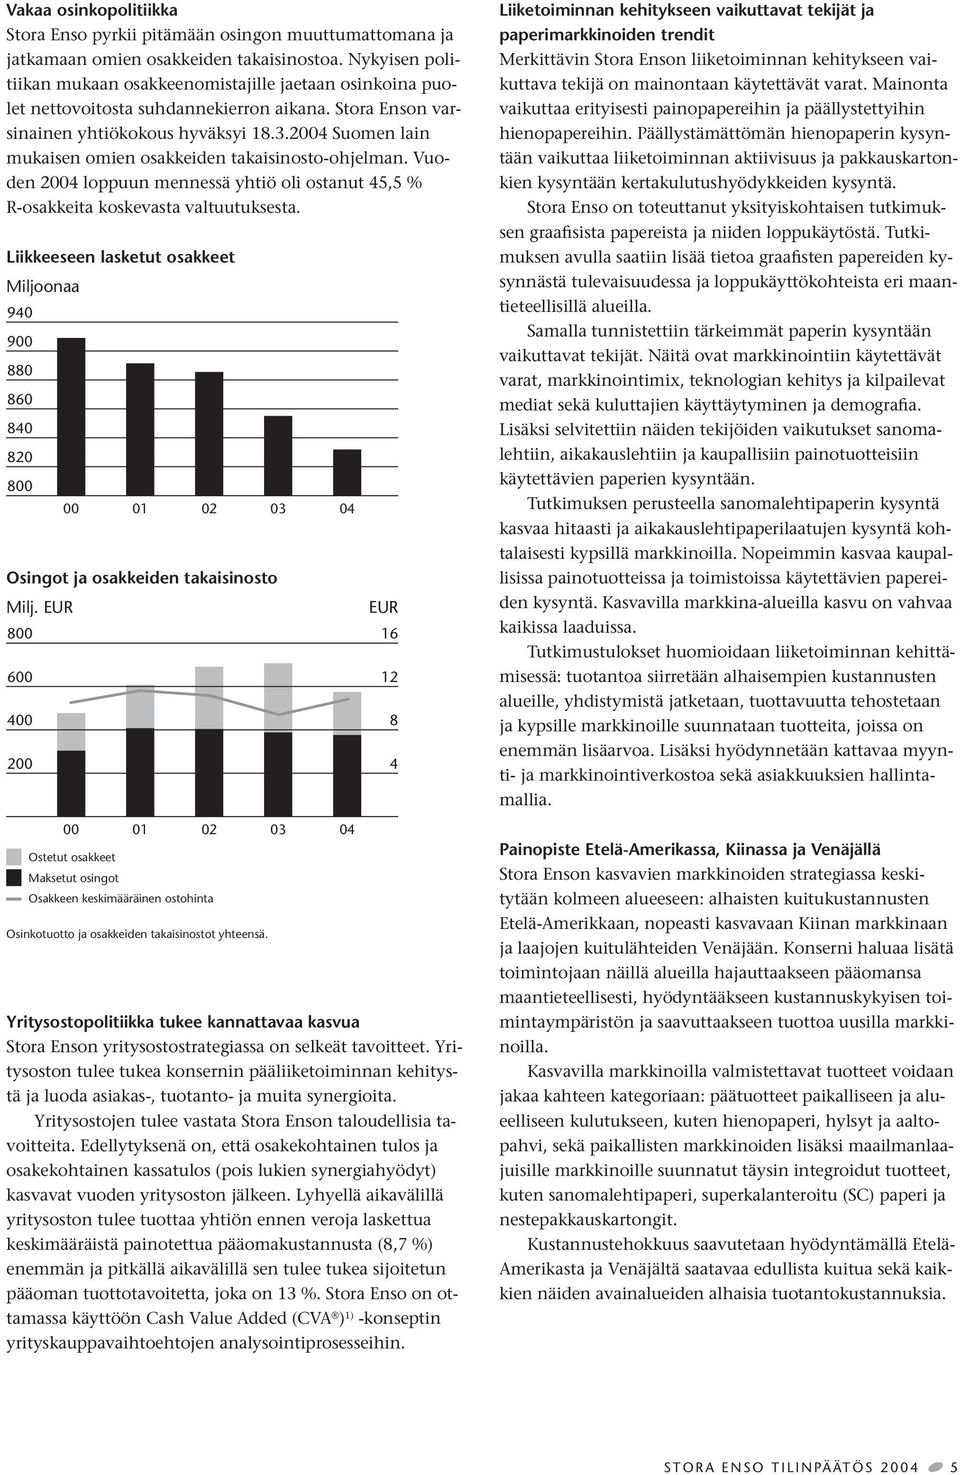 2004 Suomen lain mukaisen omien osakkeiden takaisinosto-ohjelman. Vuoden 2004 loppuun mennessä yhtiö oli ostanut 45,5 % R-osakkeita koskevasta valtuutuksesta.